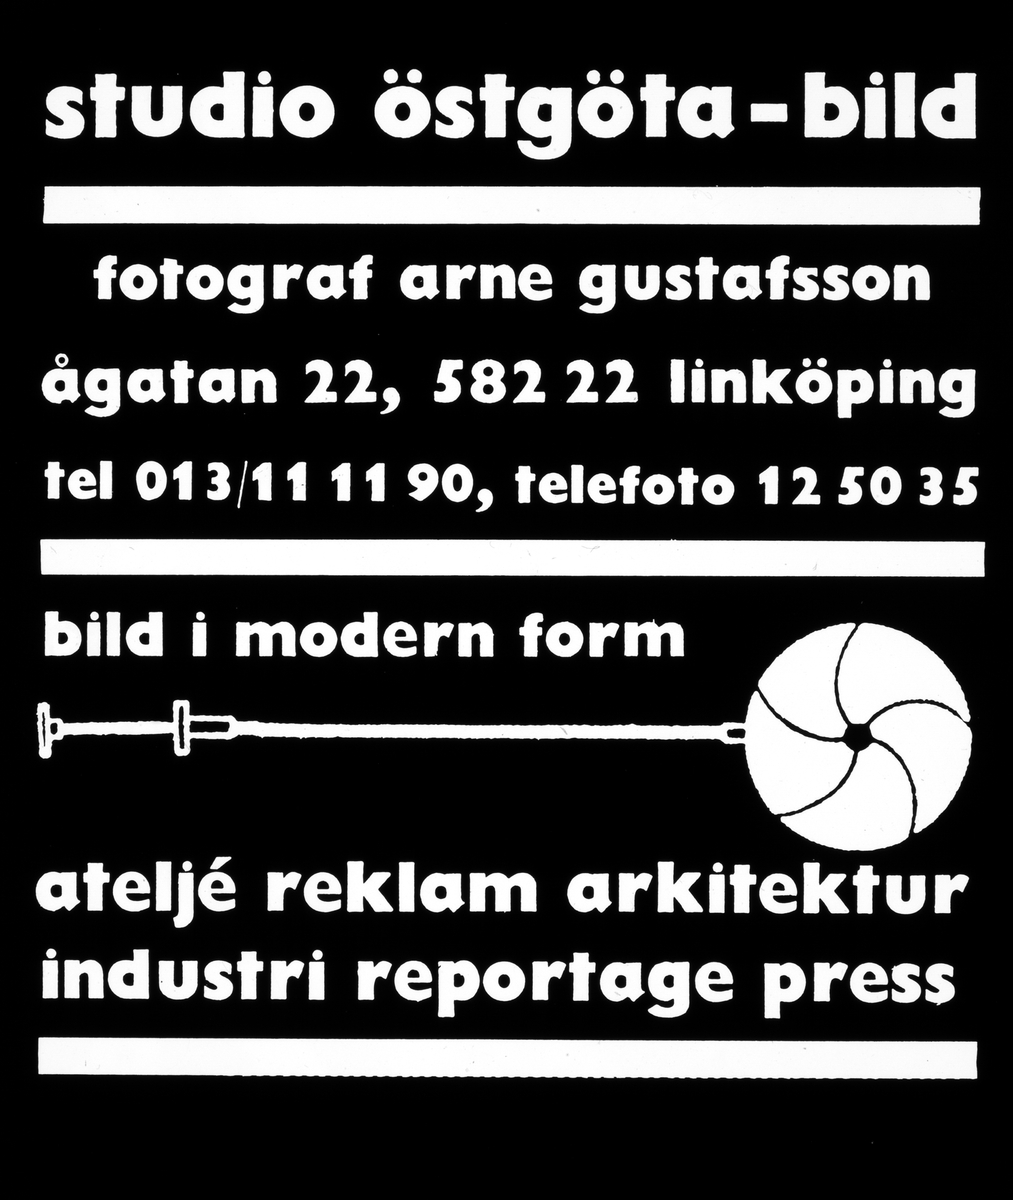 Skylt från Arne Gustafssons fotofirma Östgötabild. Annons, 1969.